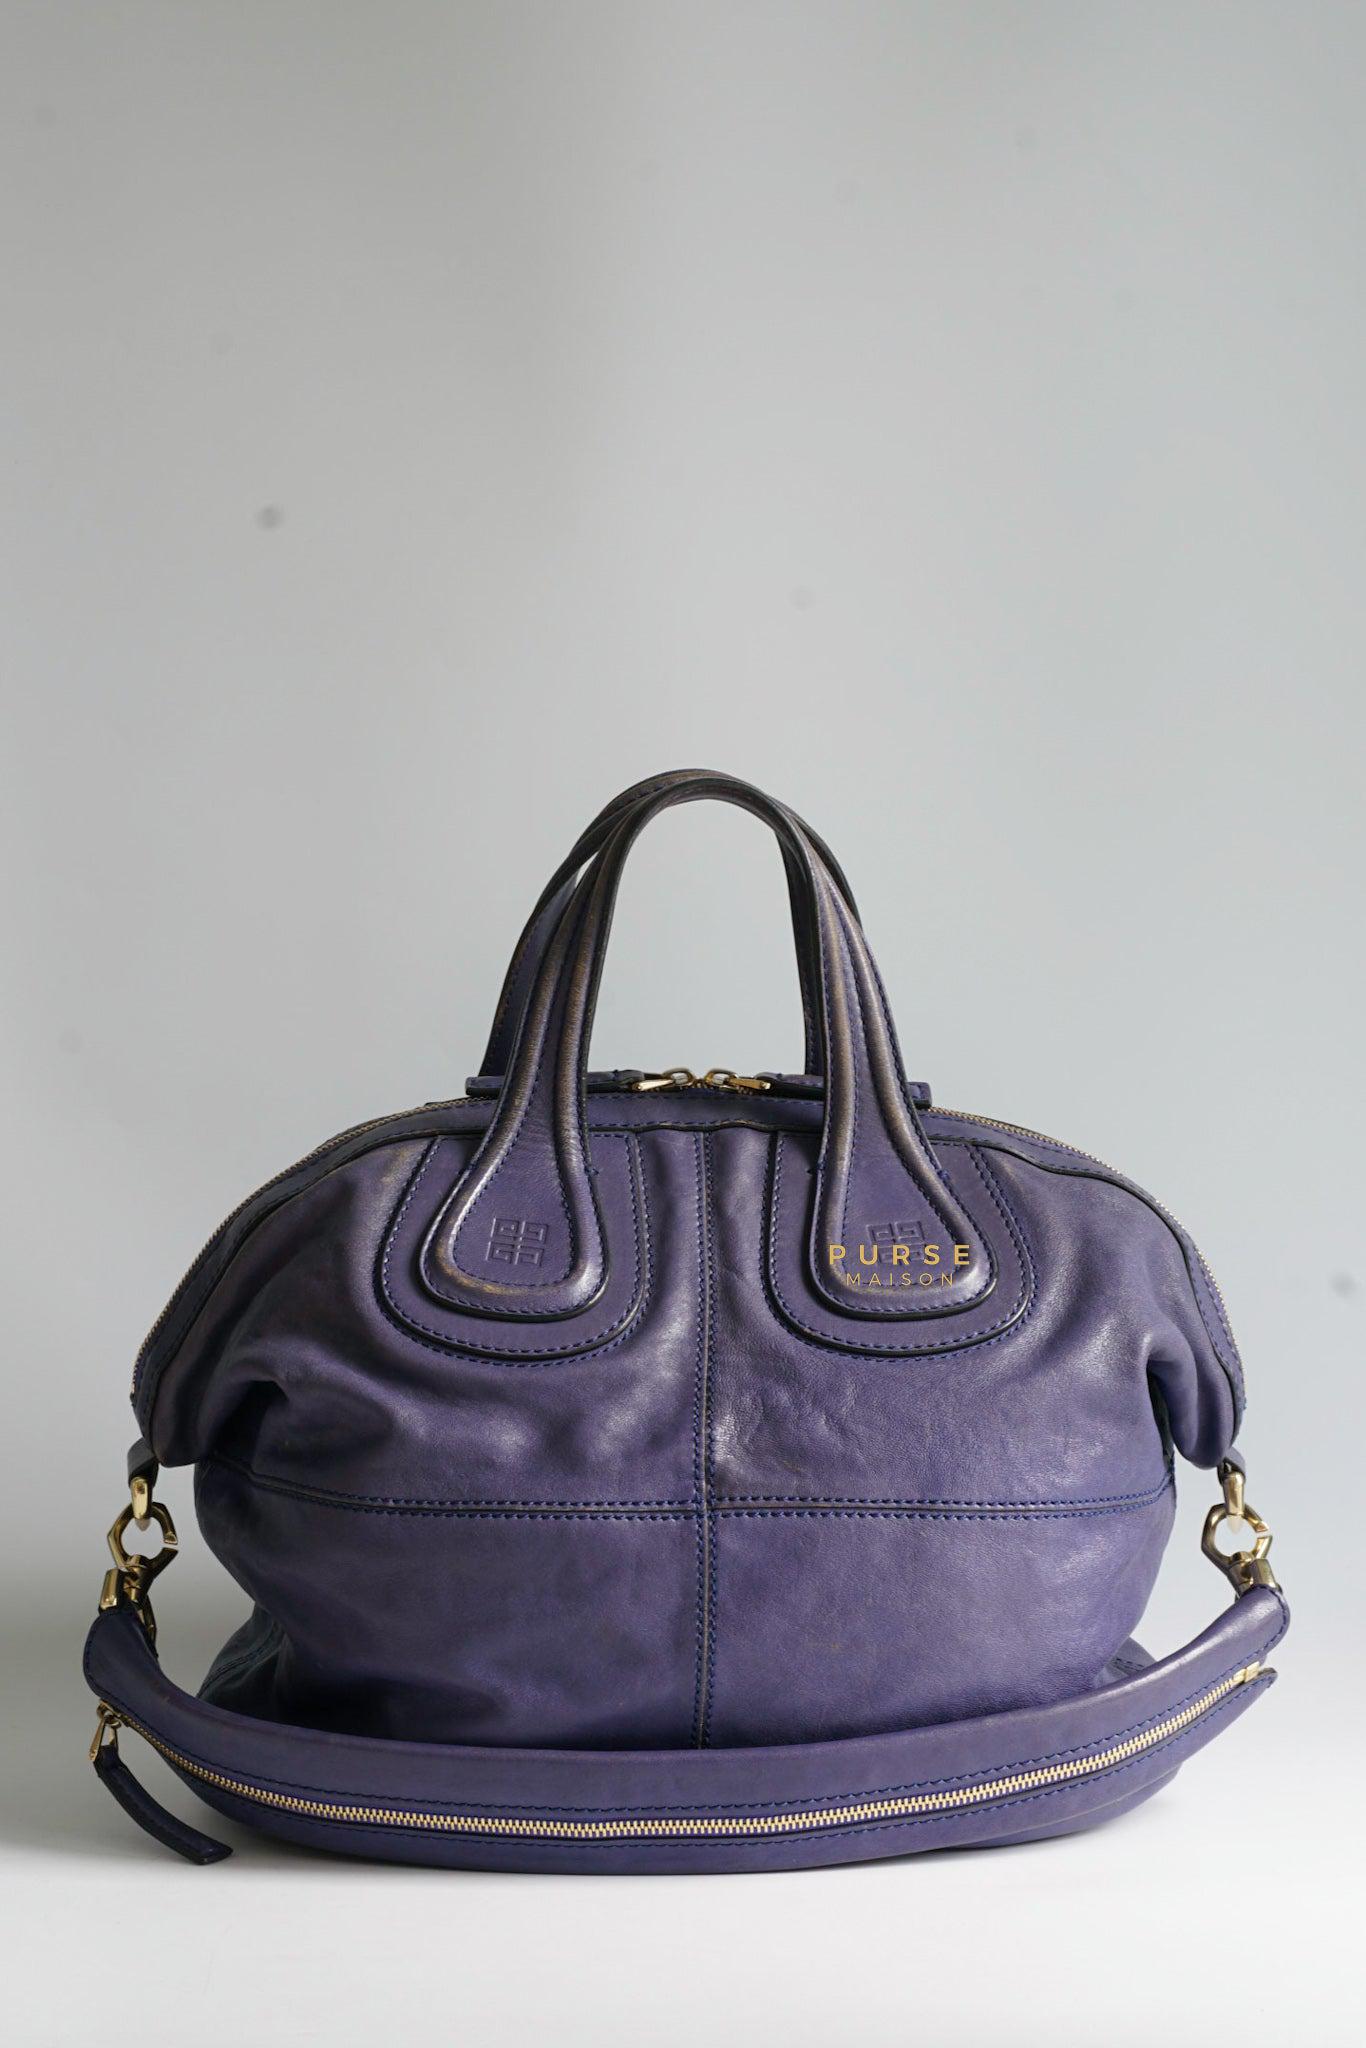 Givenchy Nightingale Blue Medium Lambskin Bag